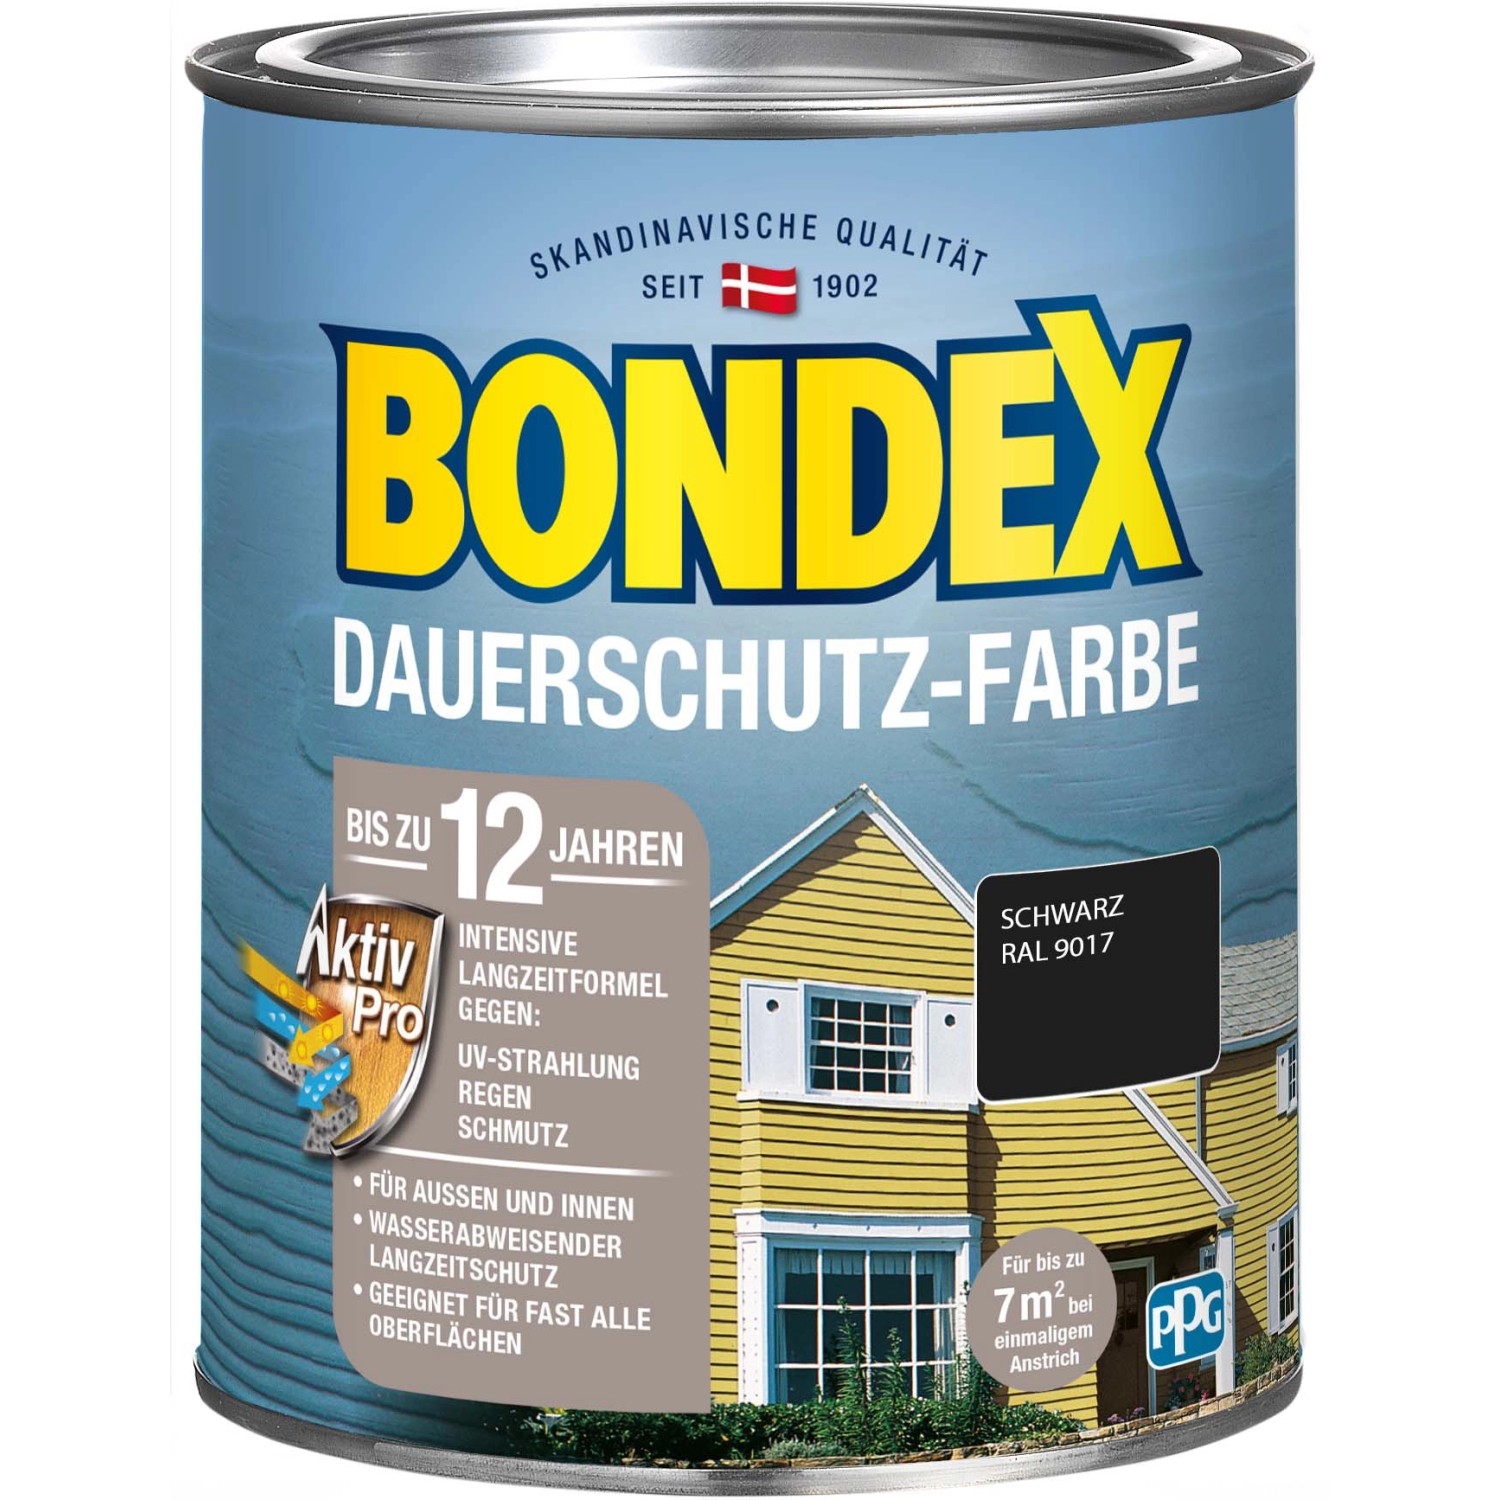 Bondex Dauerschutz-Farbe Schwarz Seidenglänzend 750 ml